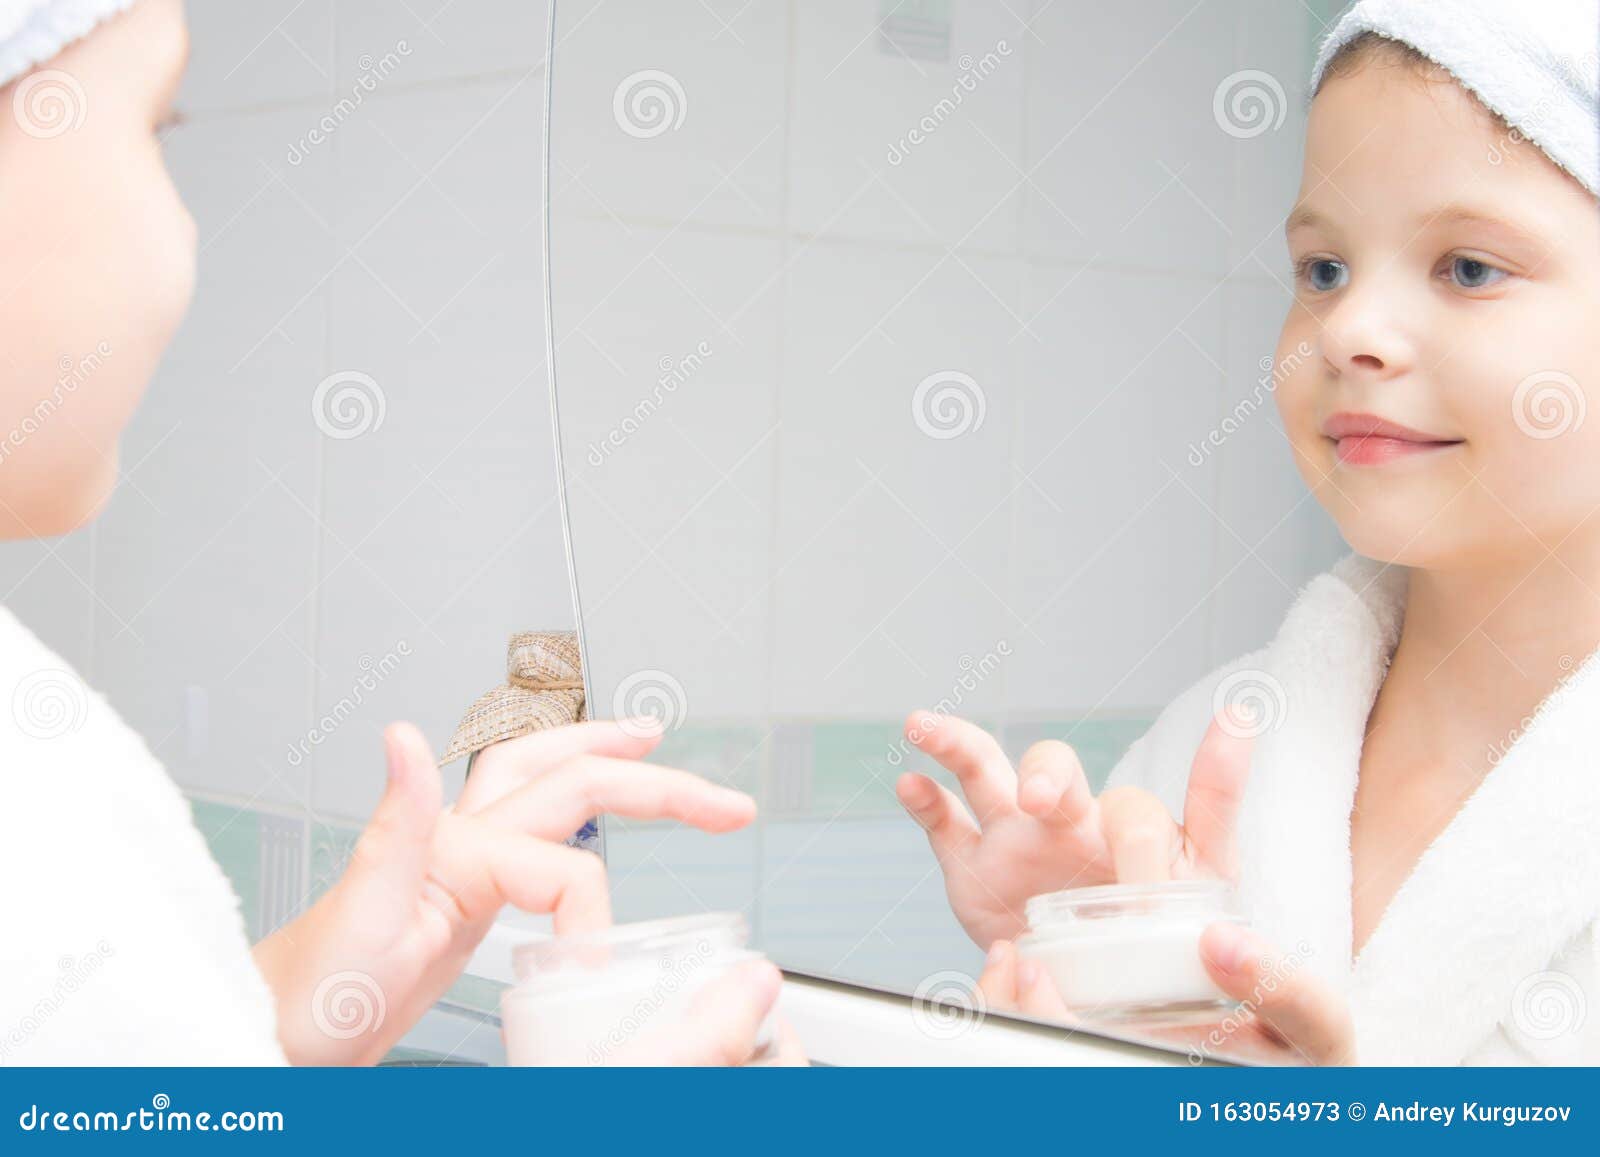 Телочка в ванной смотрит в зеркало